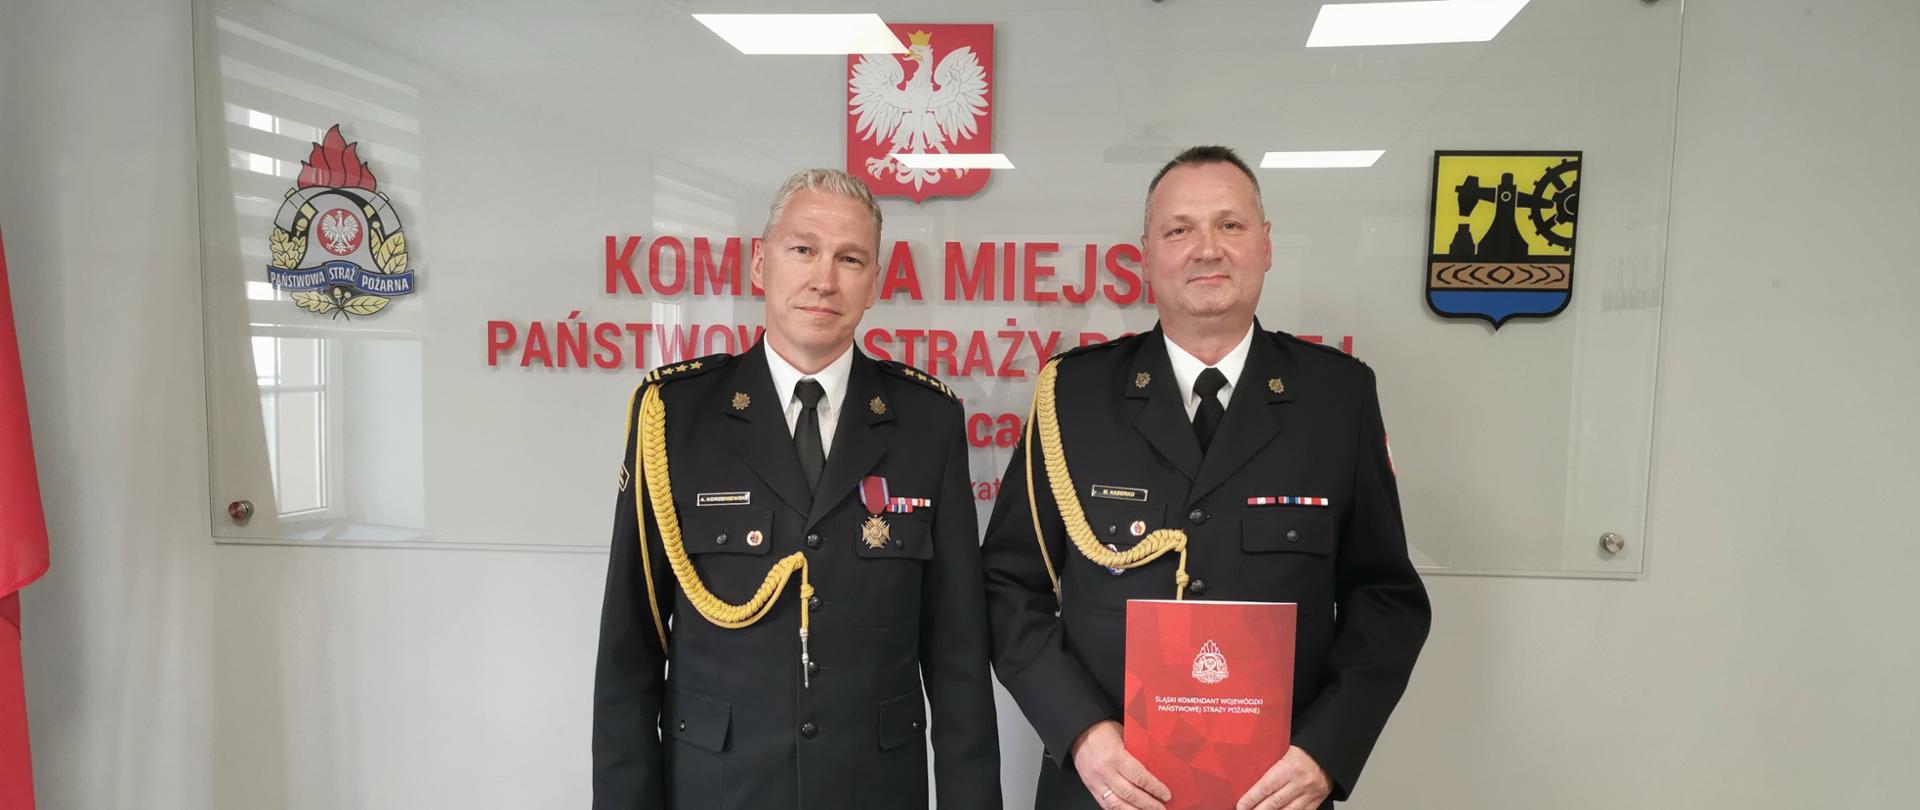 Komendant Korzeniewski w mundurze galowym wraz z Zastępcą Haberką w mundurze galowym 